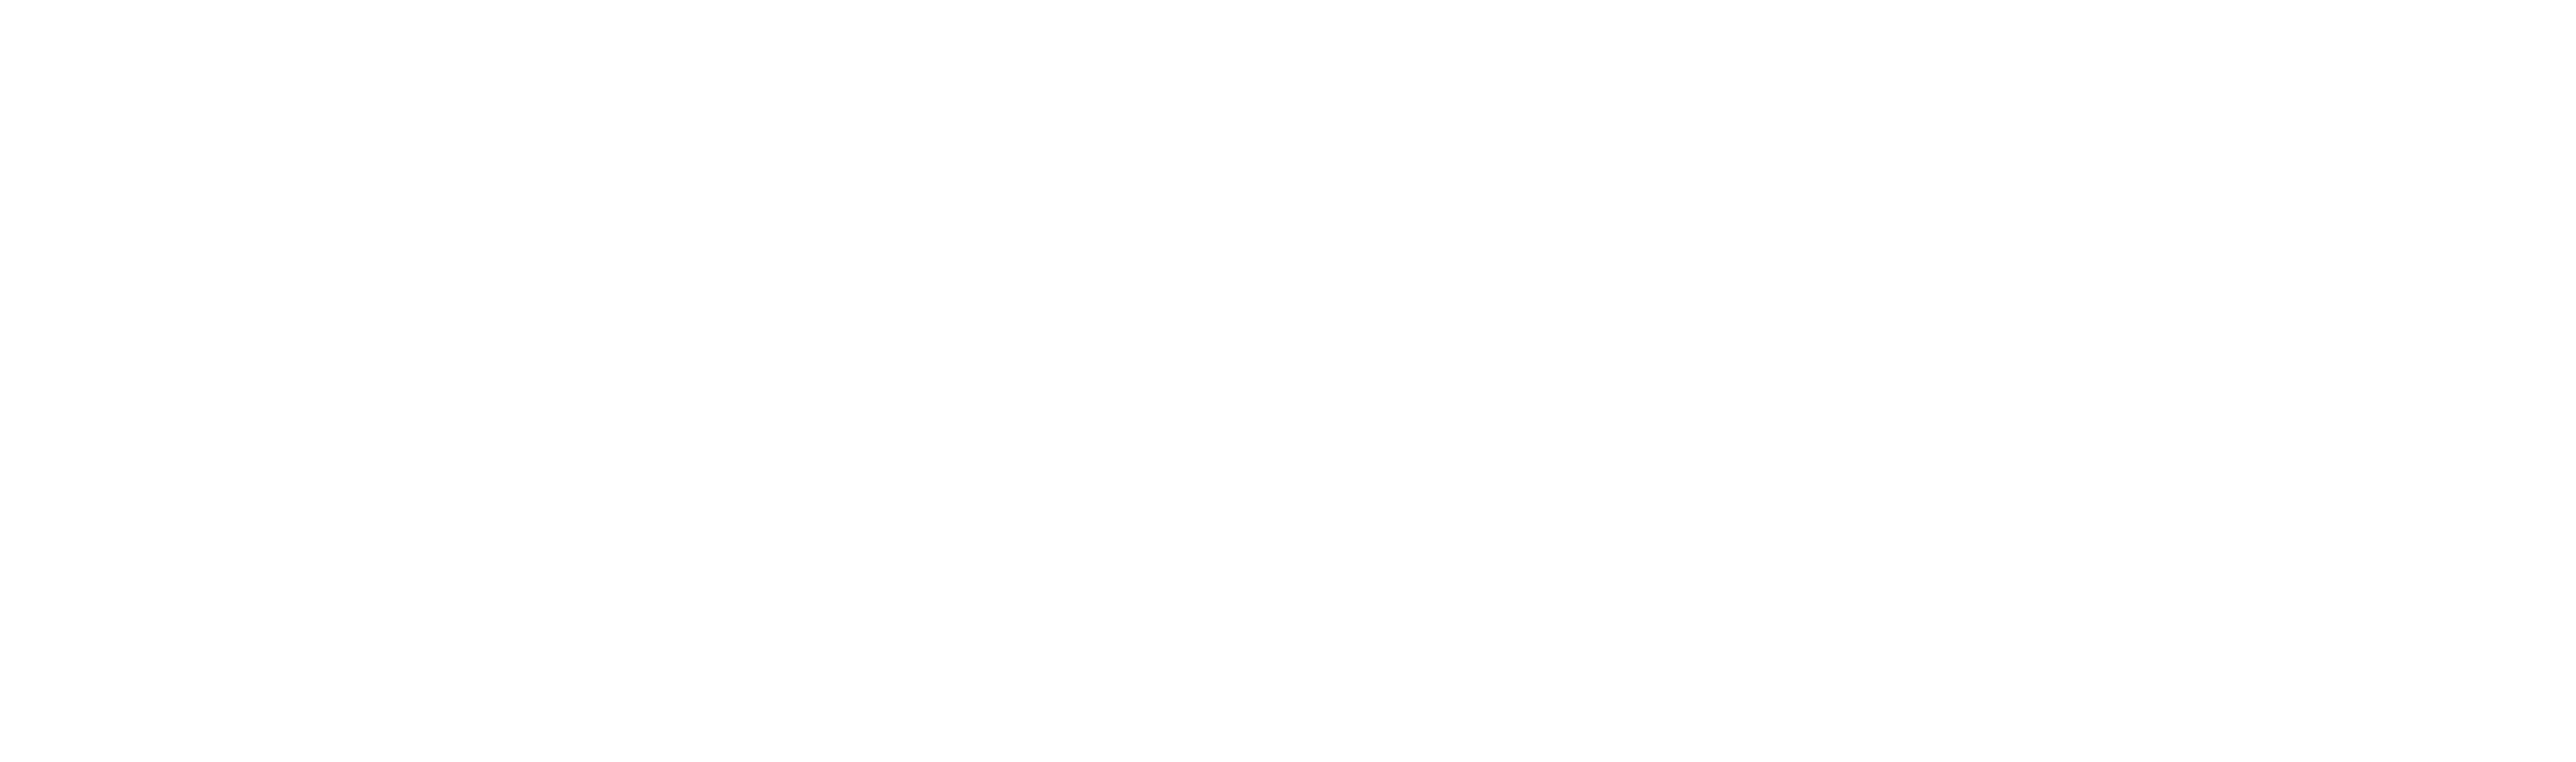 Logo - Balttour 2024 (white)